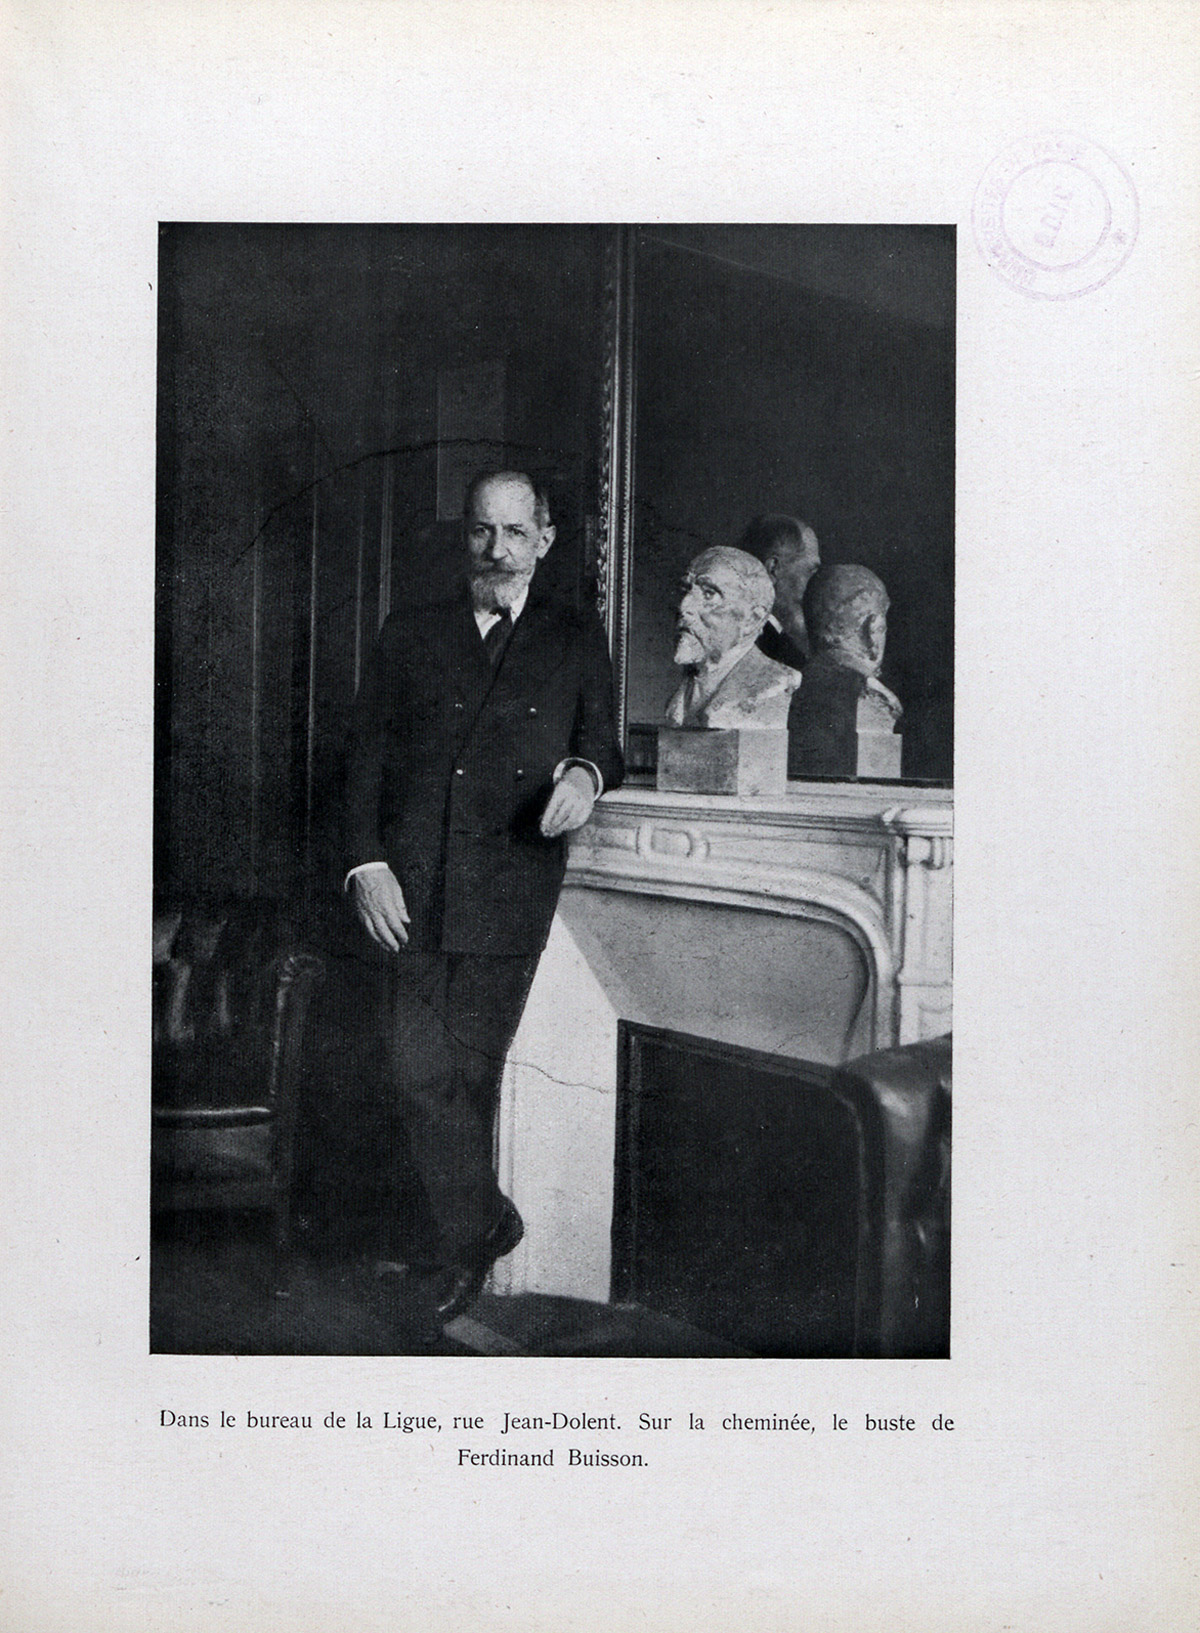 Henri Guernut dans le bureau de la Ligue, rue Jean Dolent. Sur la cheminée, le buste de Ferdinand Buisson in Images d'Henri Guernut, 1951